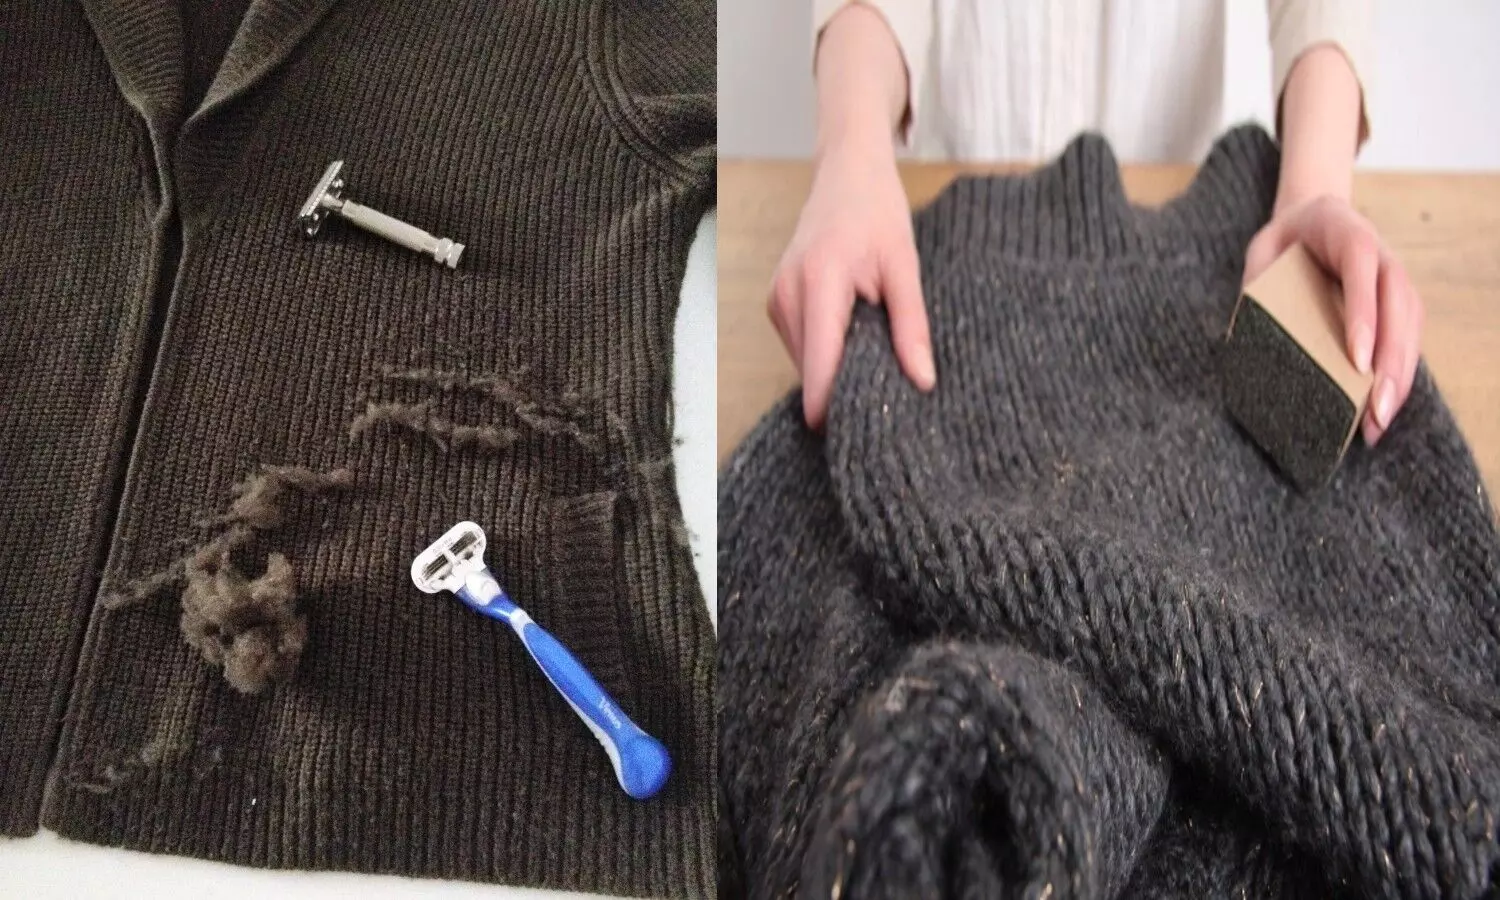 How To Remove Lint From Sweater: अब मिनटों में ऊनी कपड़ों के रोएं से पाएं छुटकारा, अपनाएं ये कारगर टिप्स